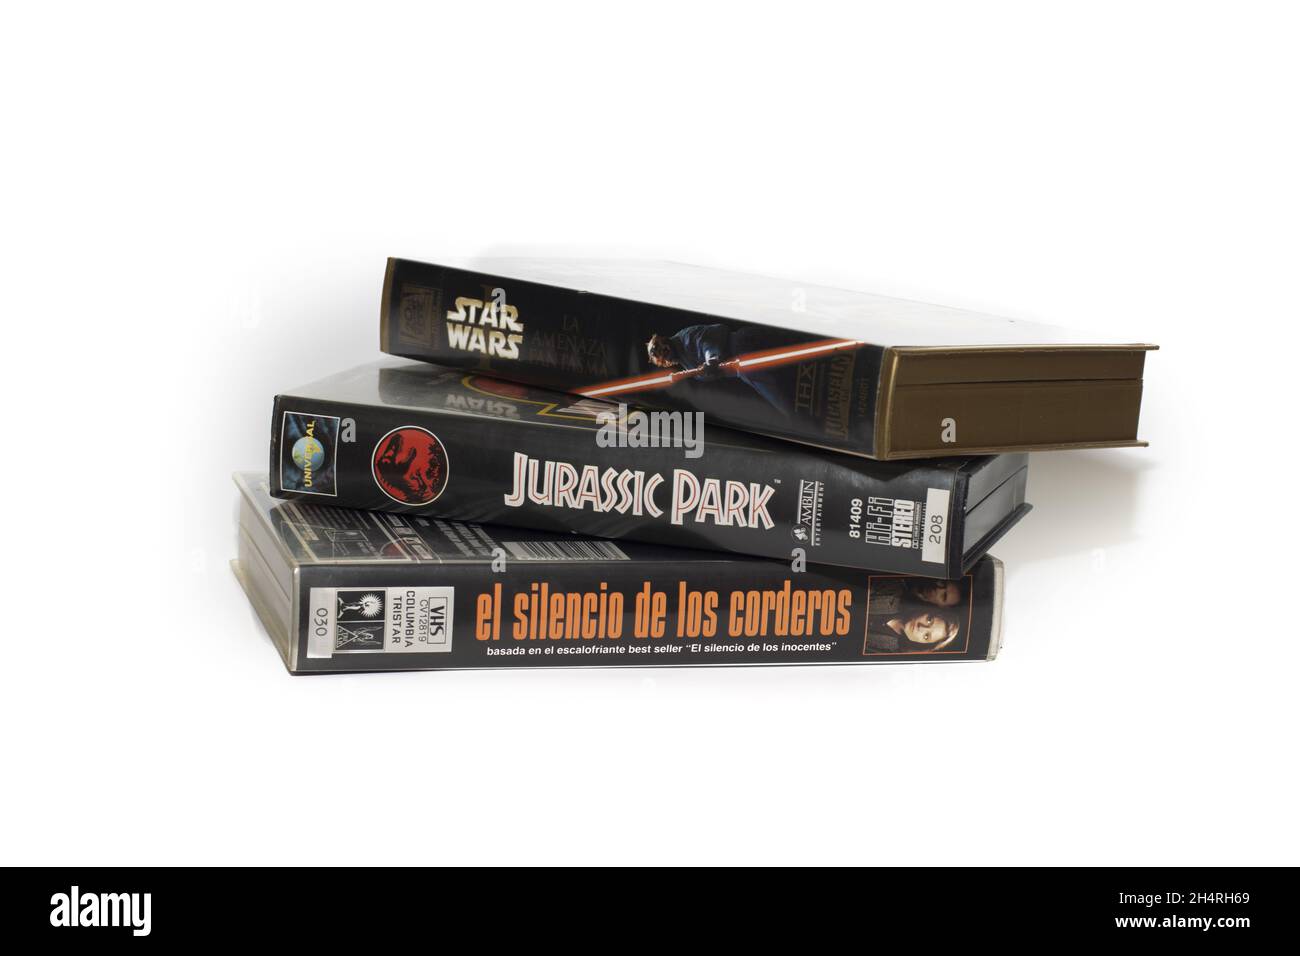 HUELVA, ESPAGNE - 11 octobre 2021 : trois cassettes VHS - Star Wars, le silence des agneaux et Jurassic Park Banque D'Images